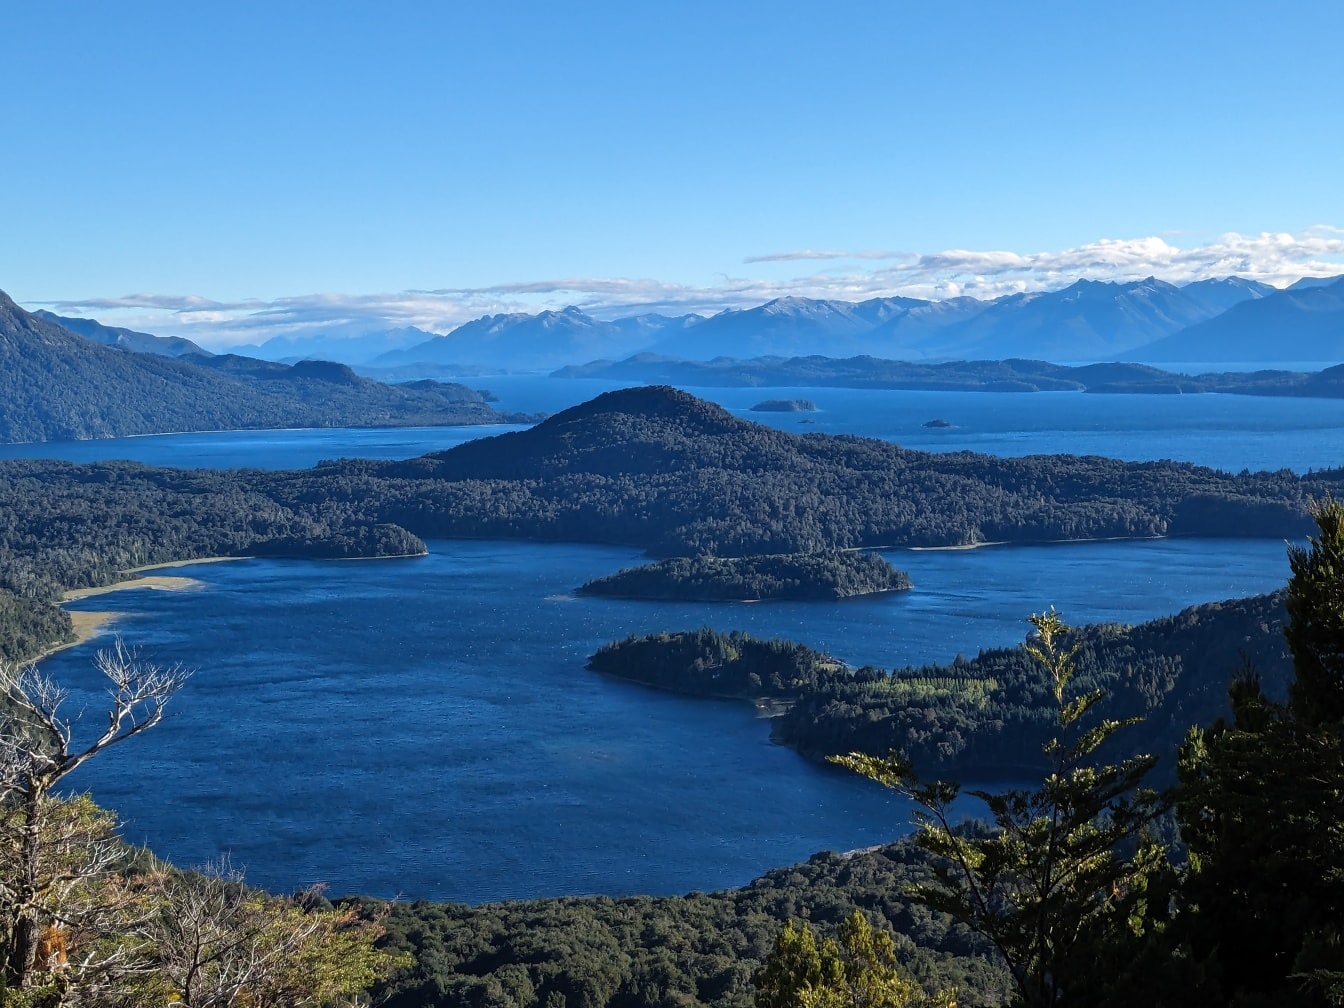 Panorama des Nahuel Huapi Sees im Naturpark Patagonien in Südamerika mit Inseln und Bergen im Hintergrund